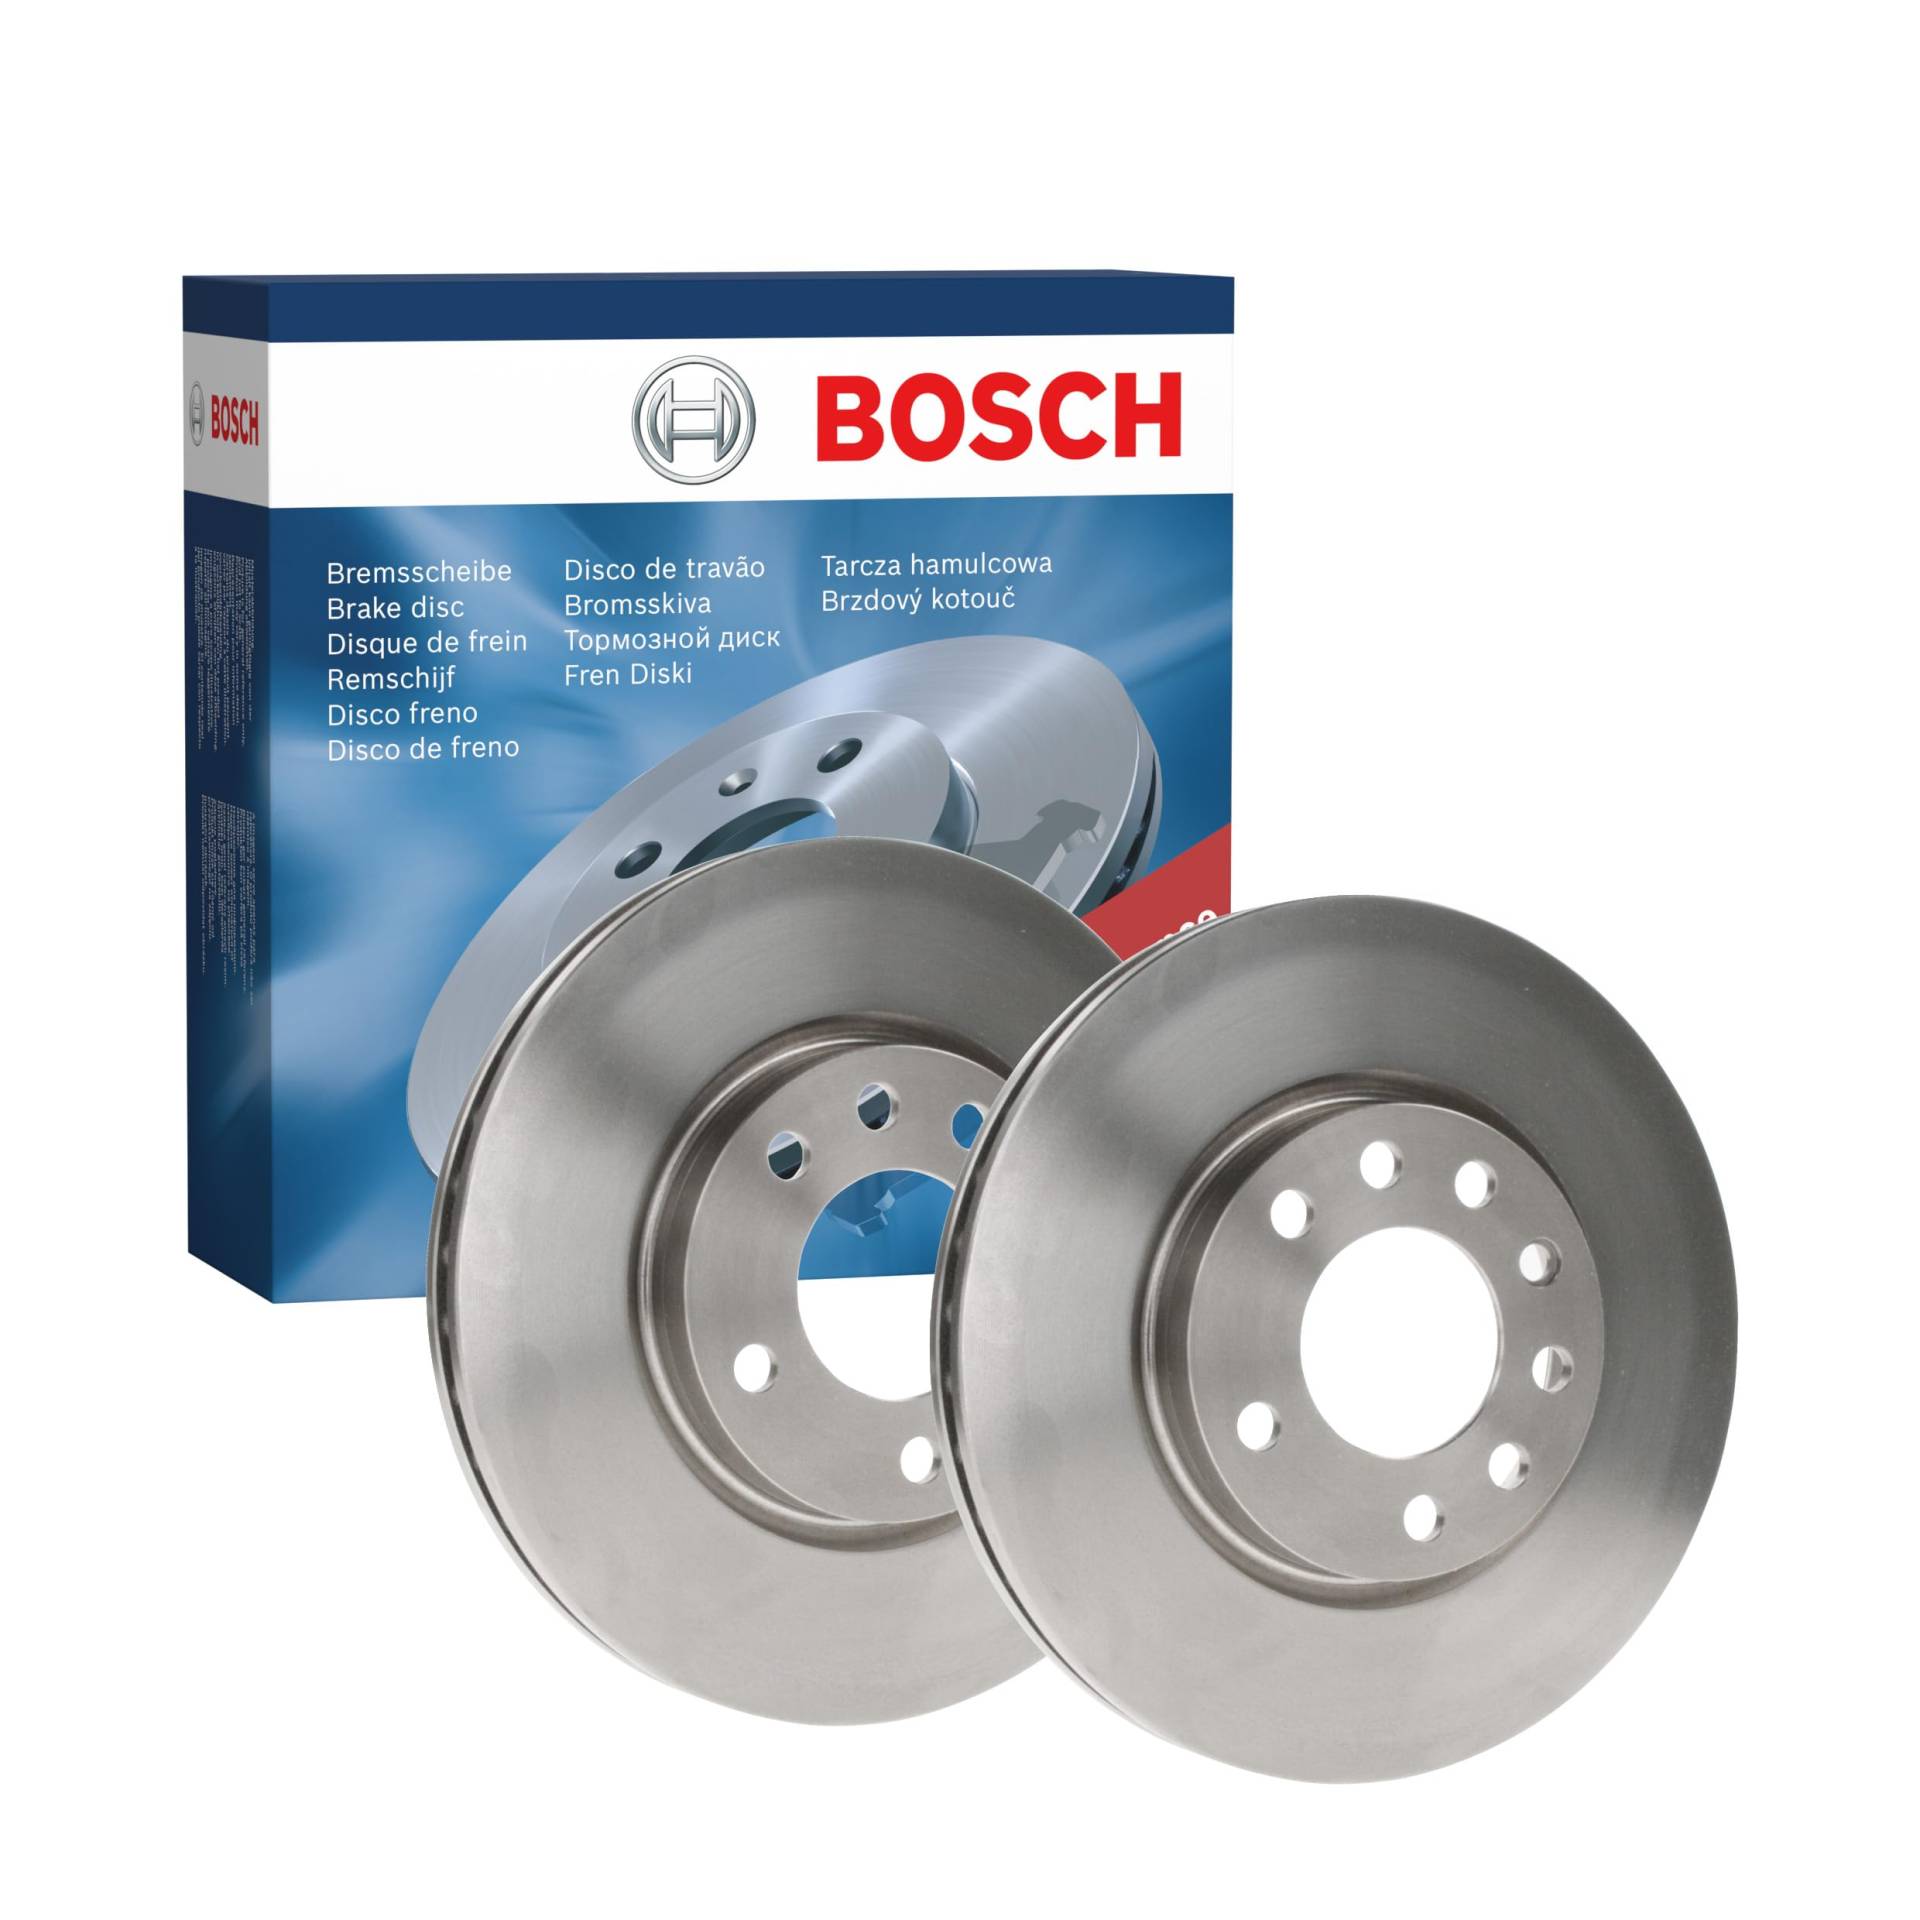 Bosch BD1140 Bremsscheiben - Vorderachse - ECE-R90 Zertifizierung - zwei Bremsscheiben pro Set von Bosch Automotive